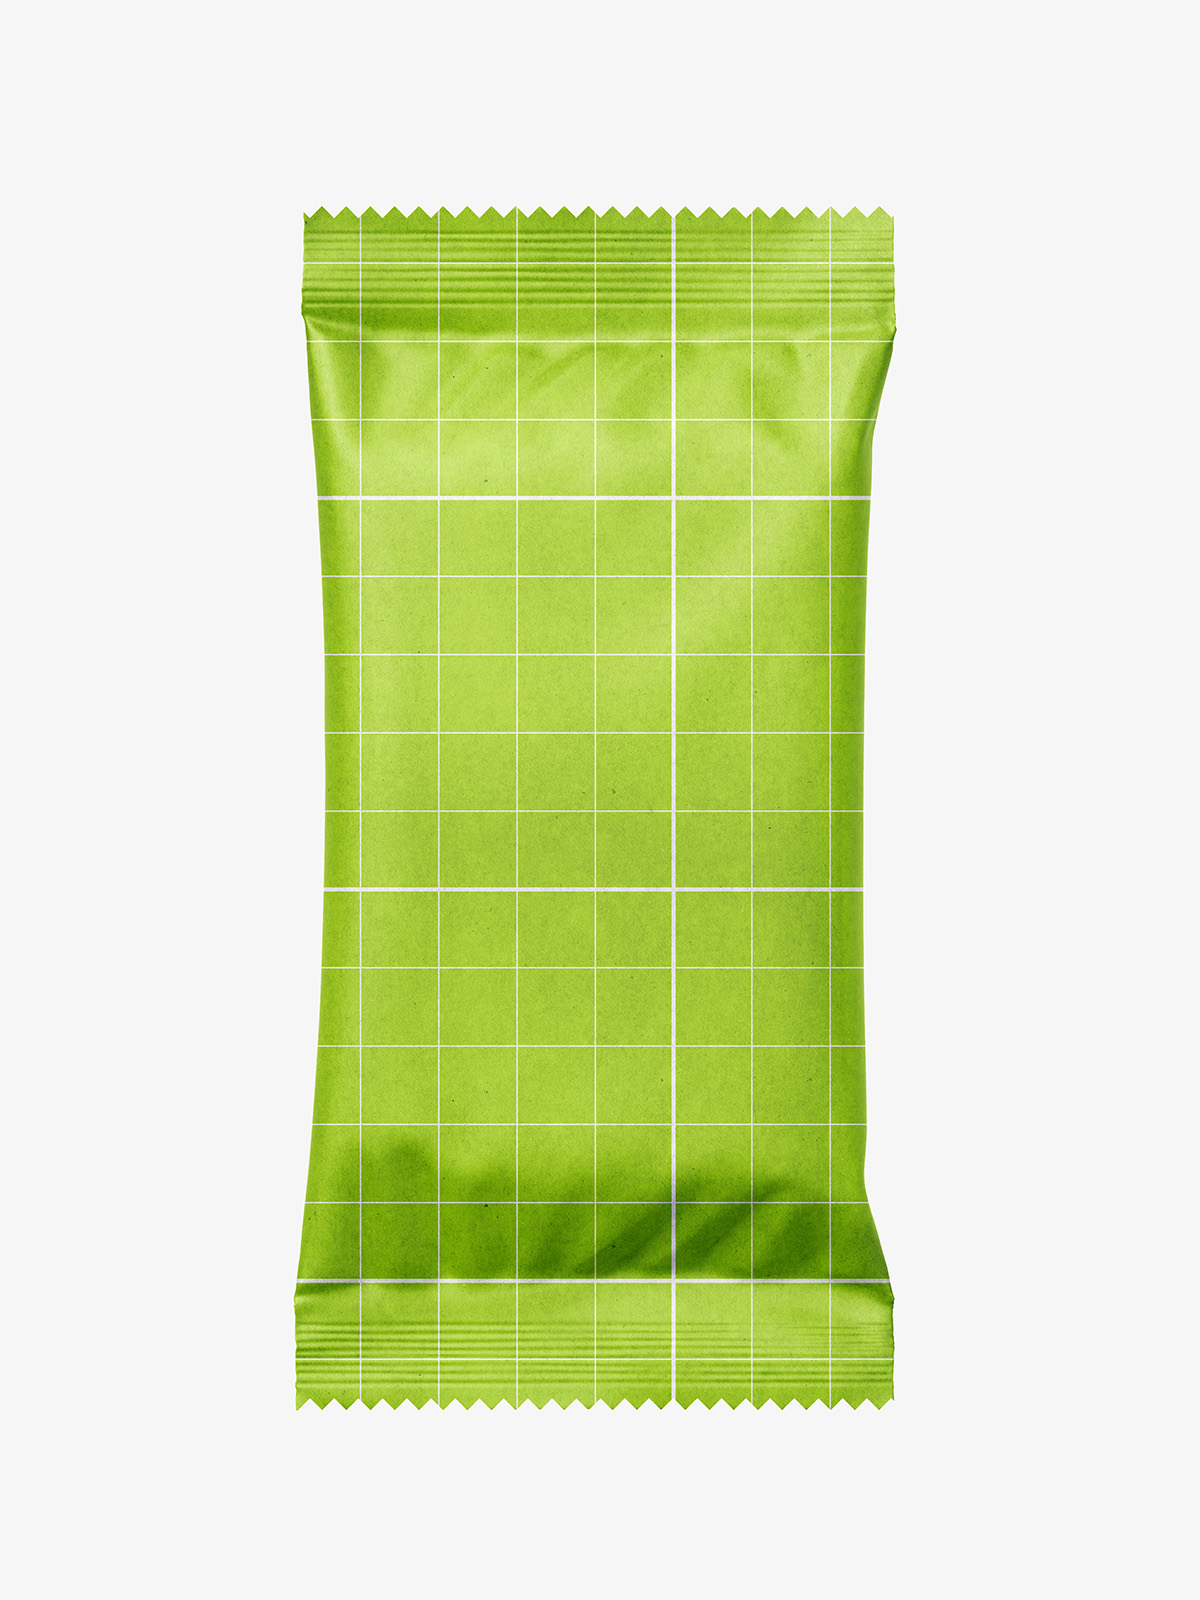 Download Kraft paper flow pack mockup - Smarty Mockups